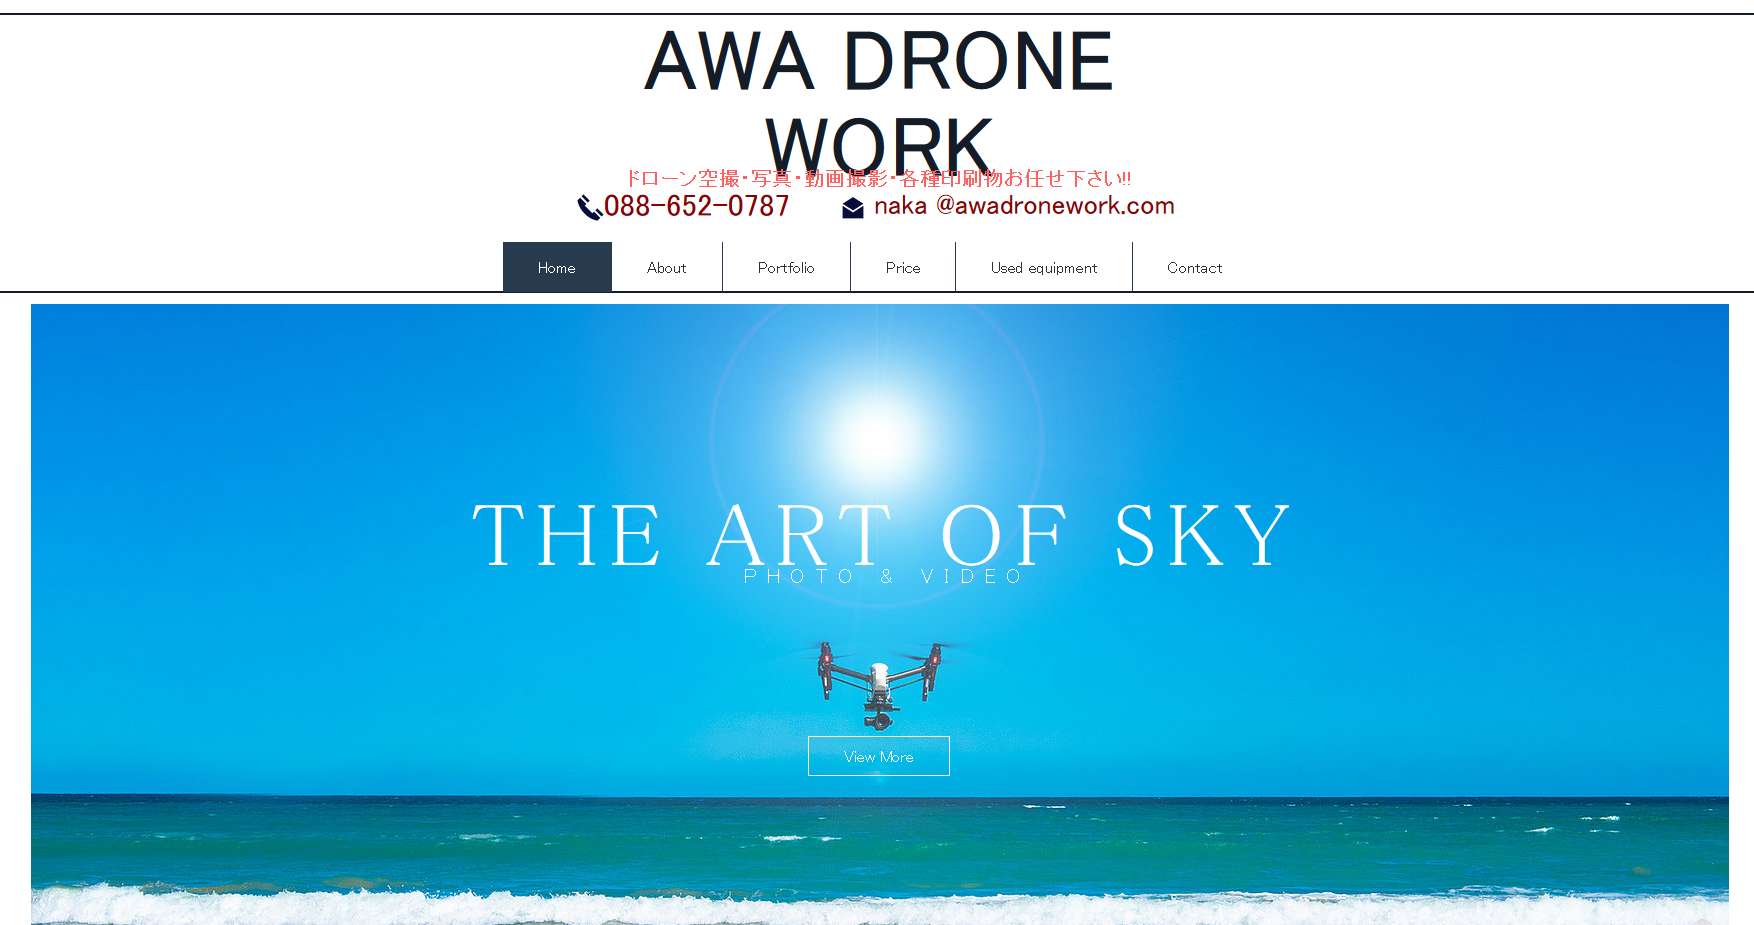 AWA DRONE WORKのAWA DRONE WORKサービス